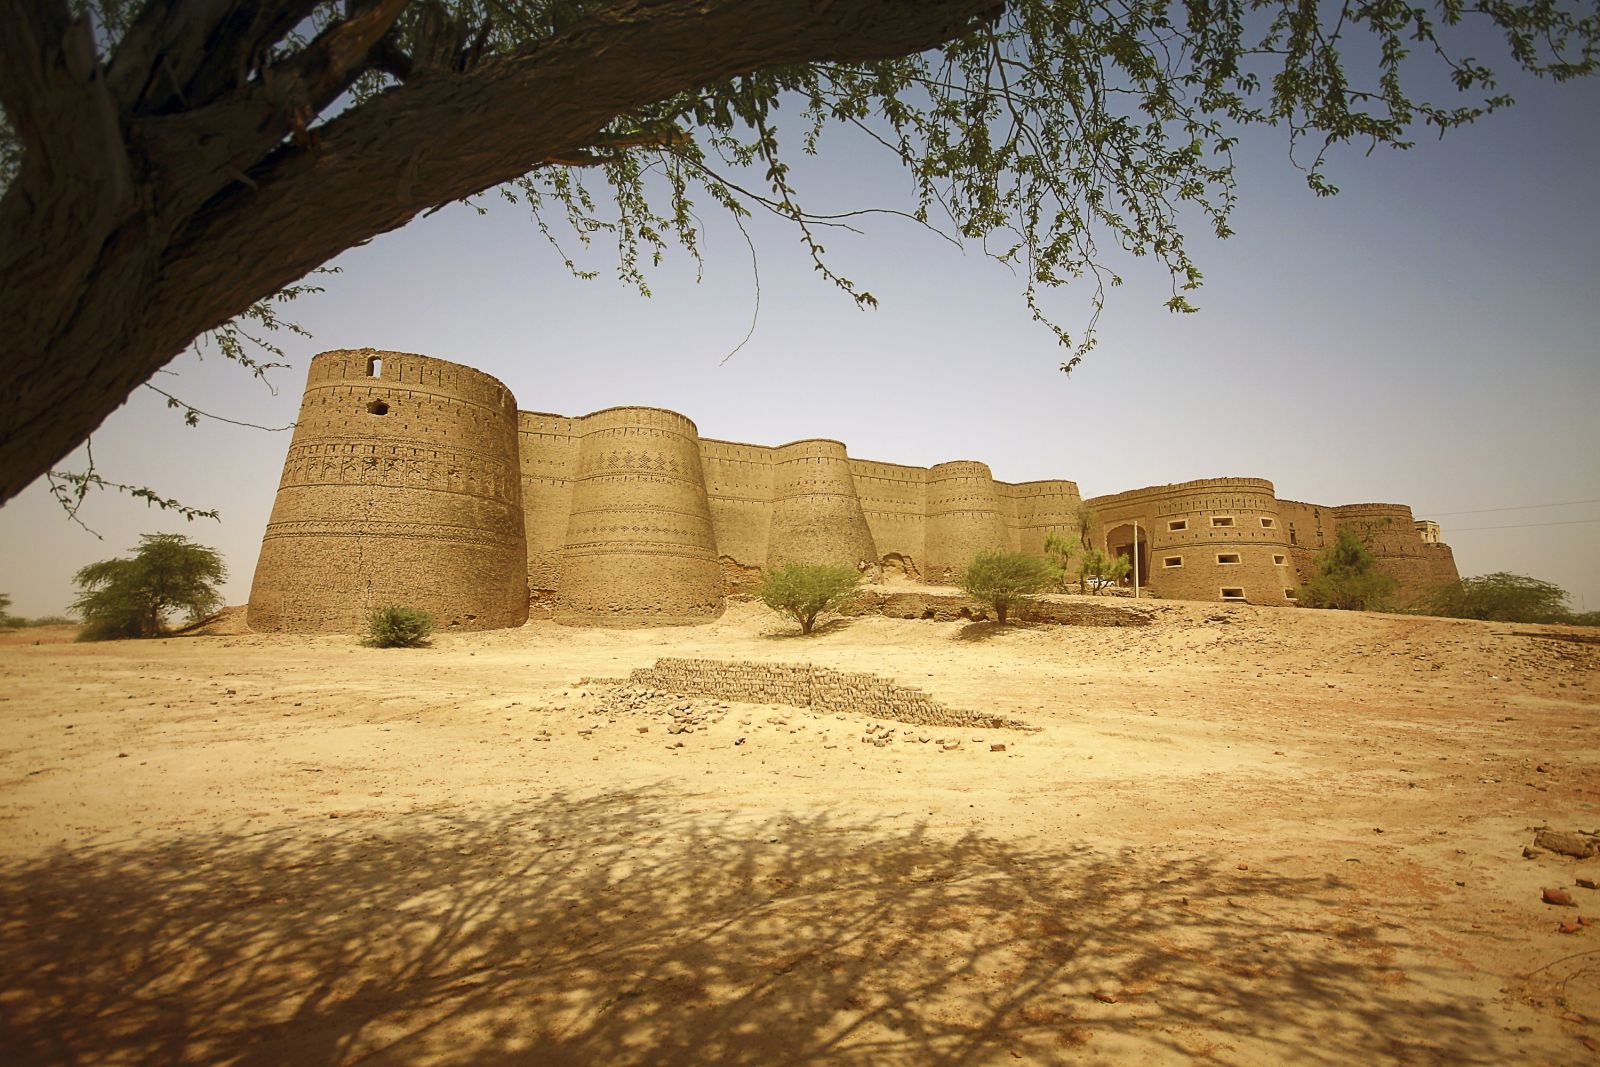 Das Derawar-Fort liegt im Herzen der Cholistan-Wüste, nahe der indischen Grenze.